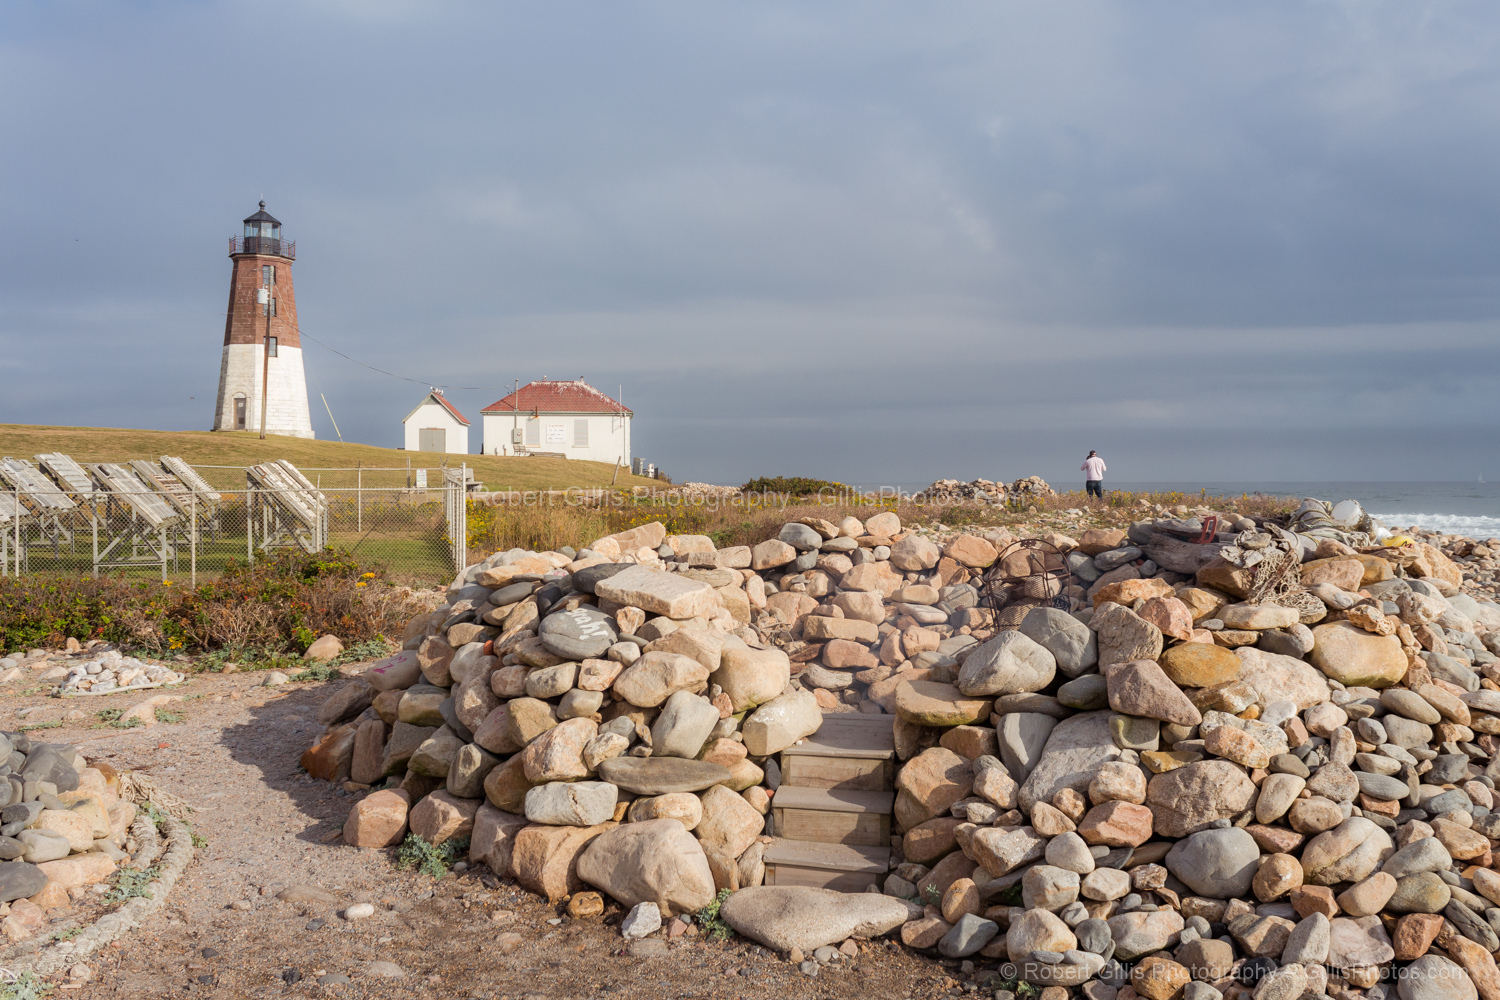 011-RI-Narragansett-Port-Judith-Light-and-Stones